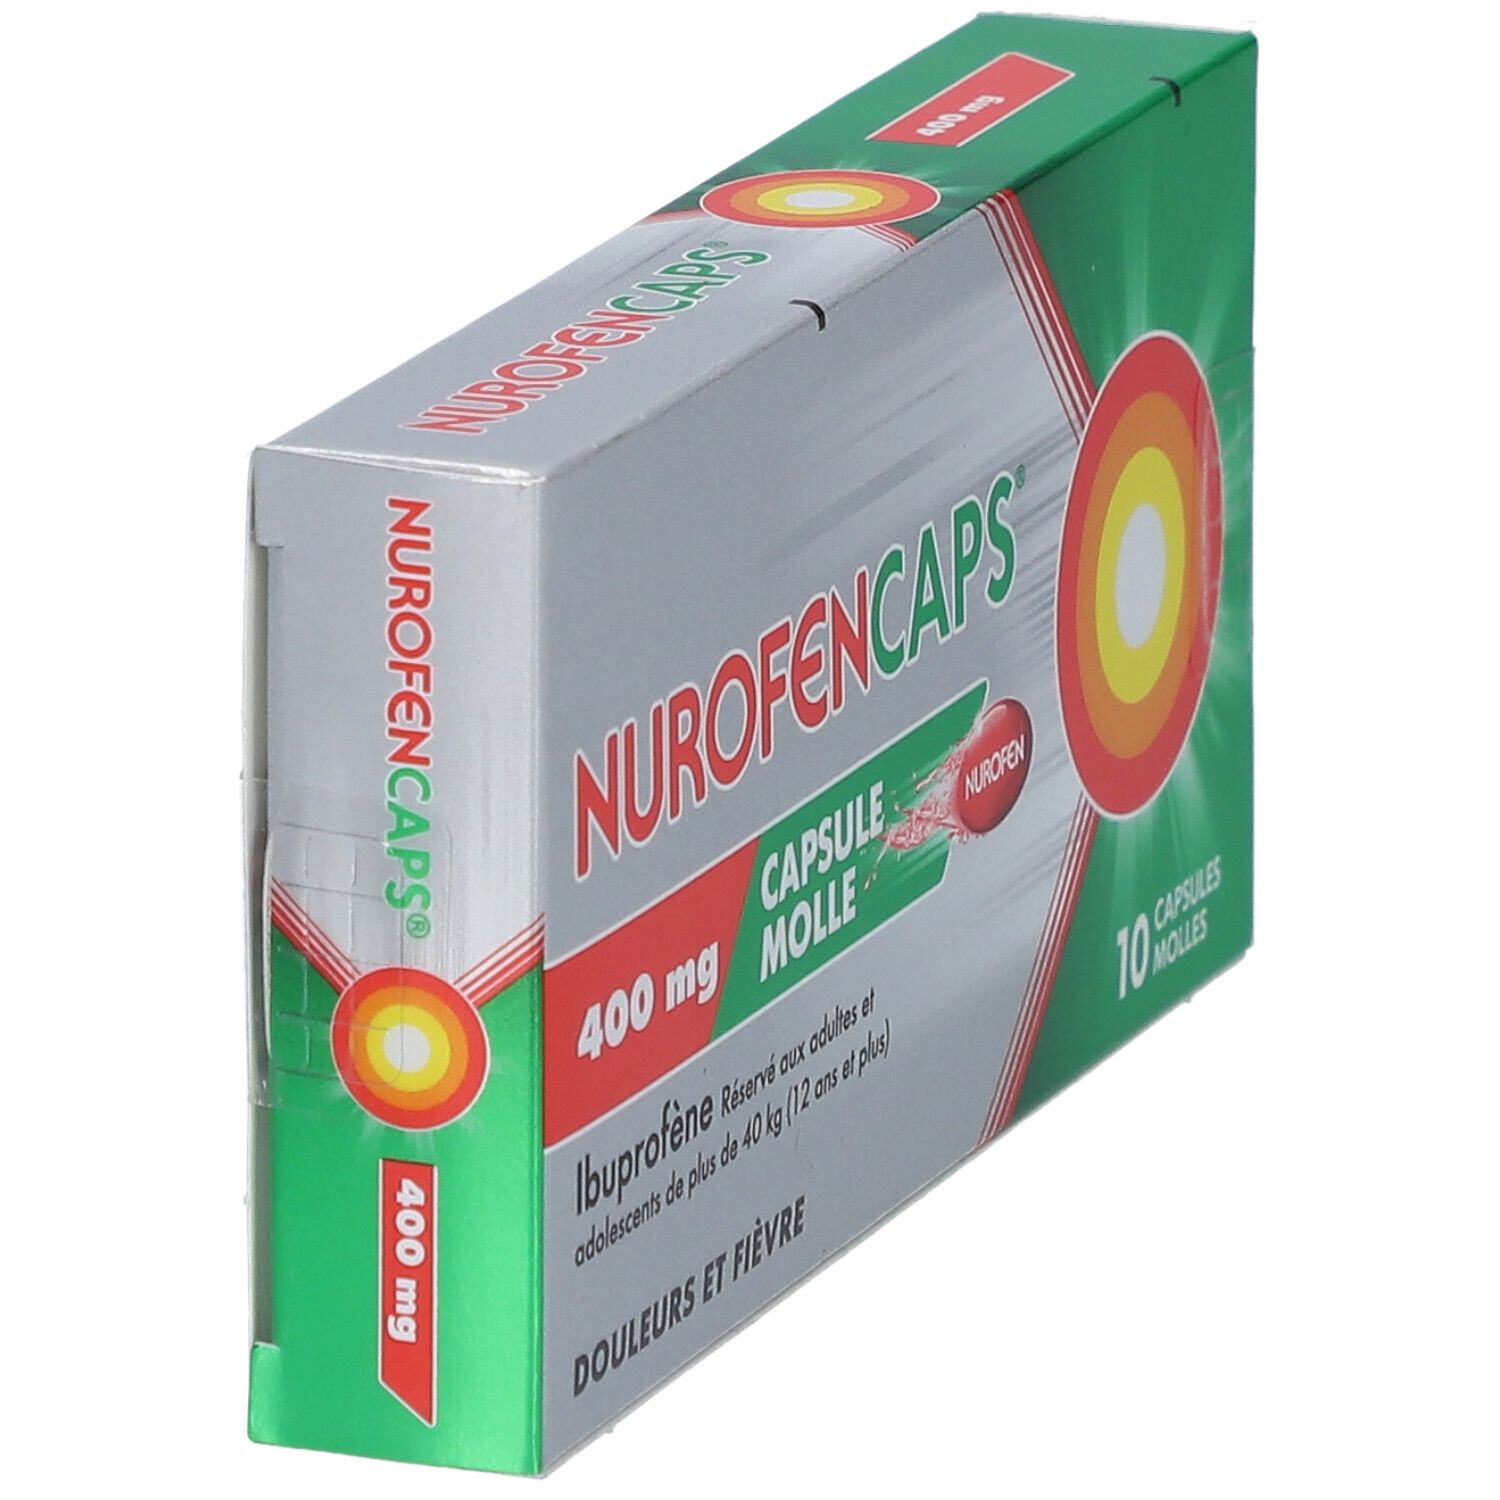 Nurofencaps® 400 mg